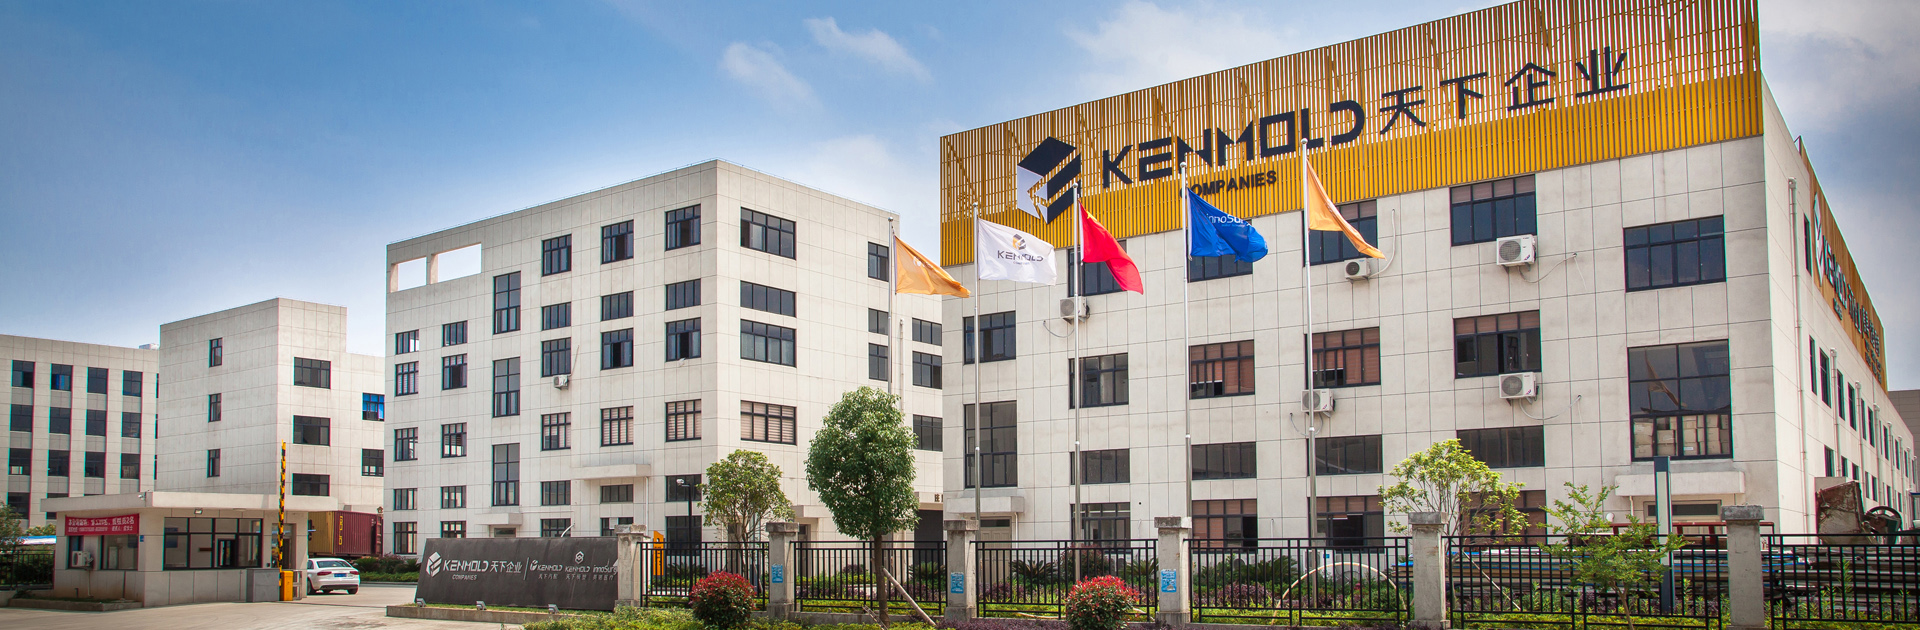 Kenmold Company Location